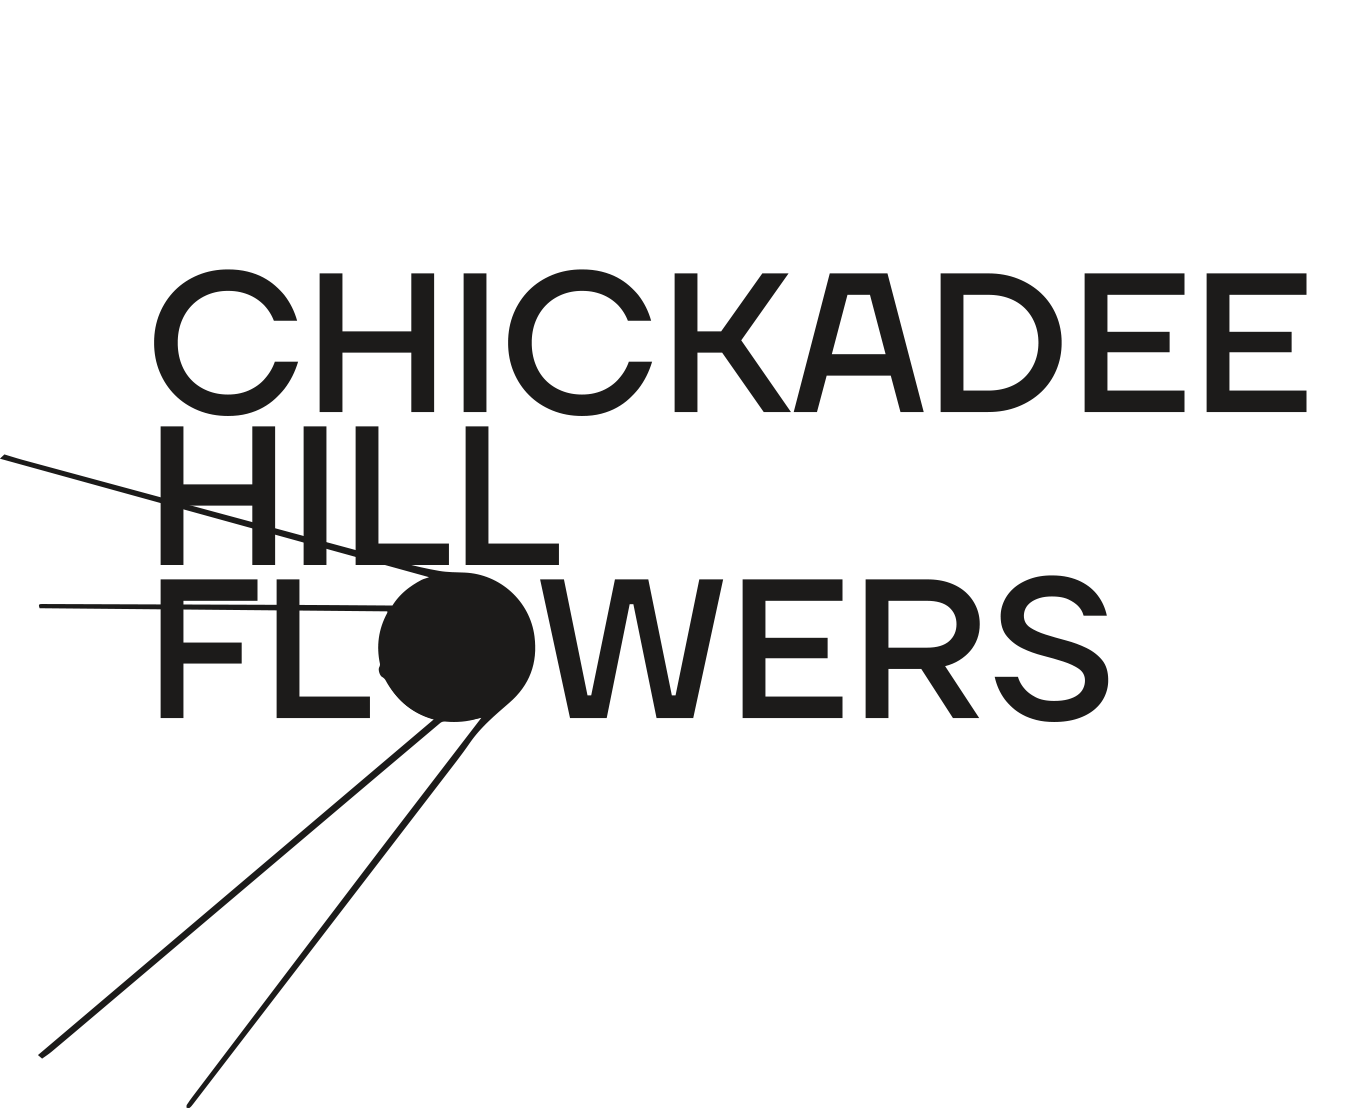 Chickadee Hill Flowers